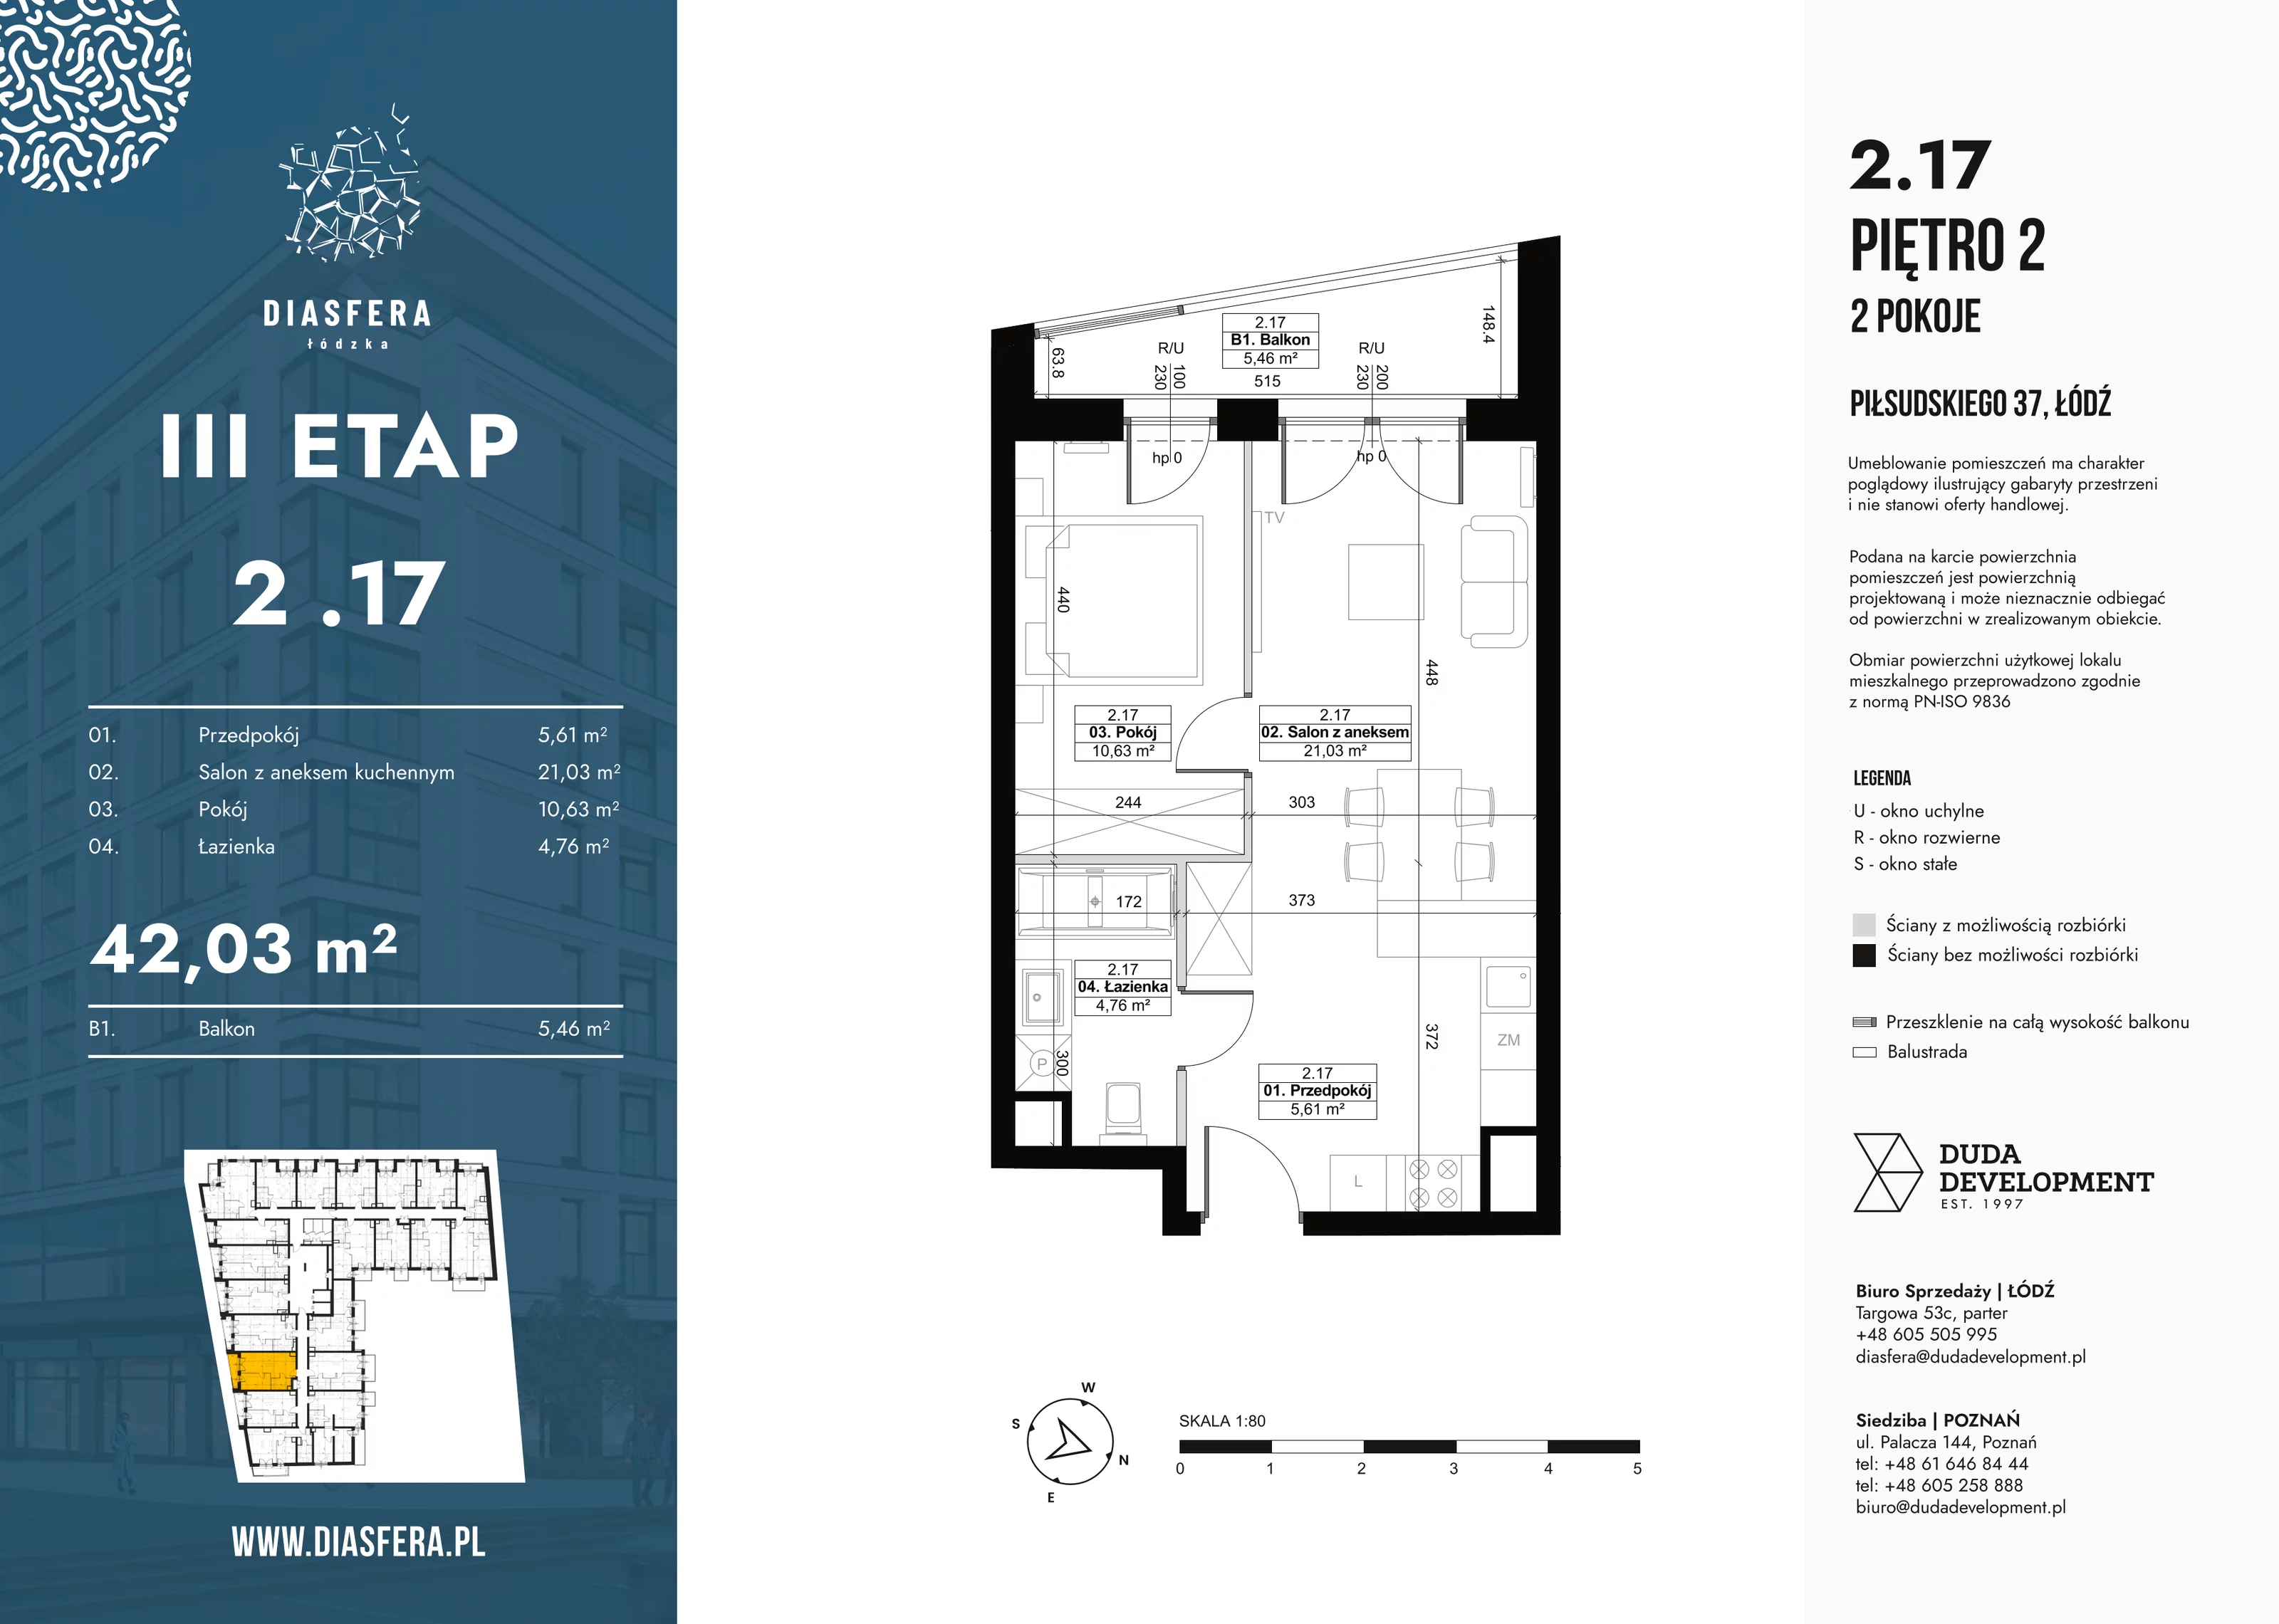 Mieszkanie 42,03 m², piętro 2, oferta nr 2_17, Diasfera III, Łódź, Śródmieście, al. Piłsudskiego 37